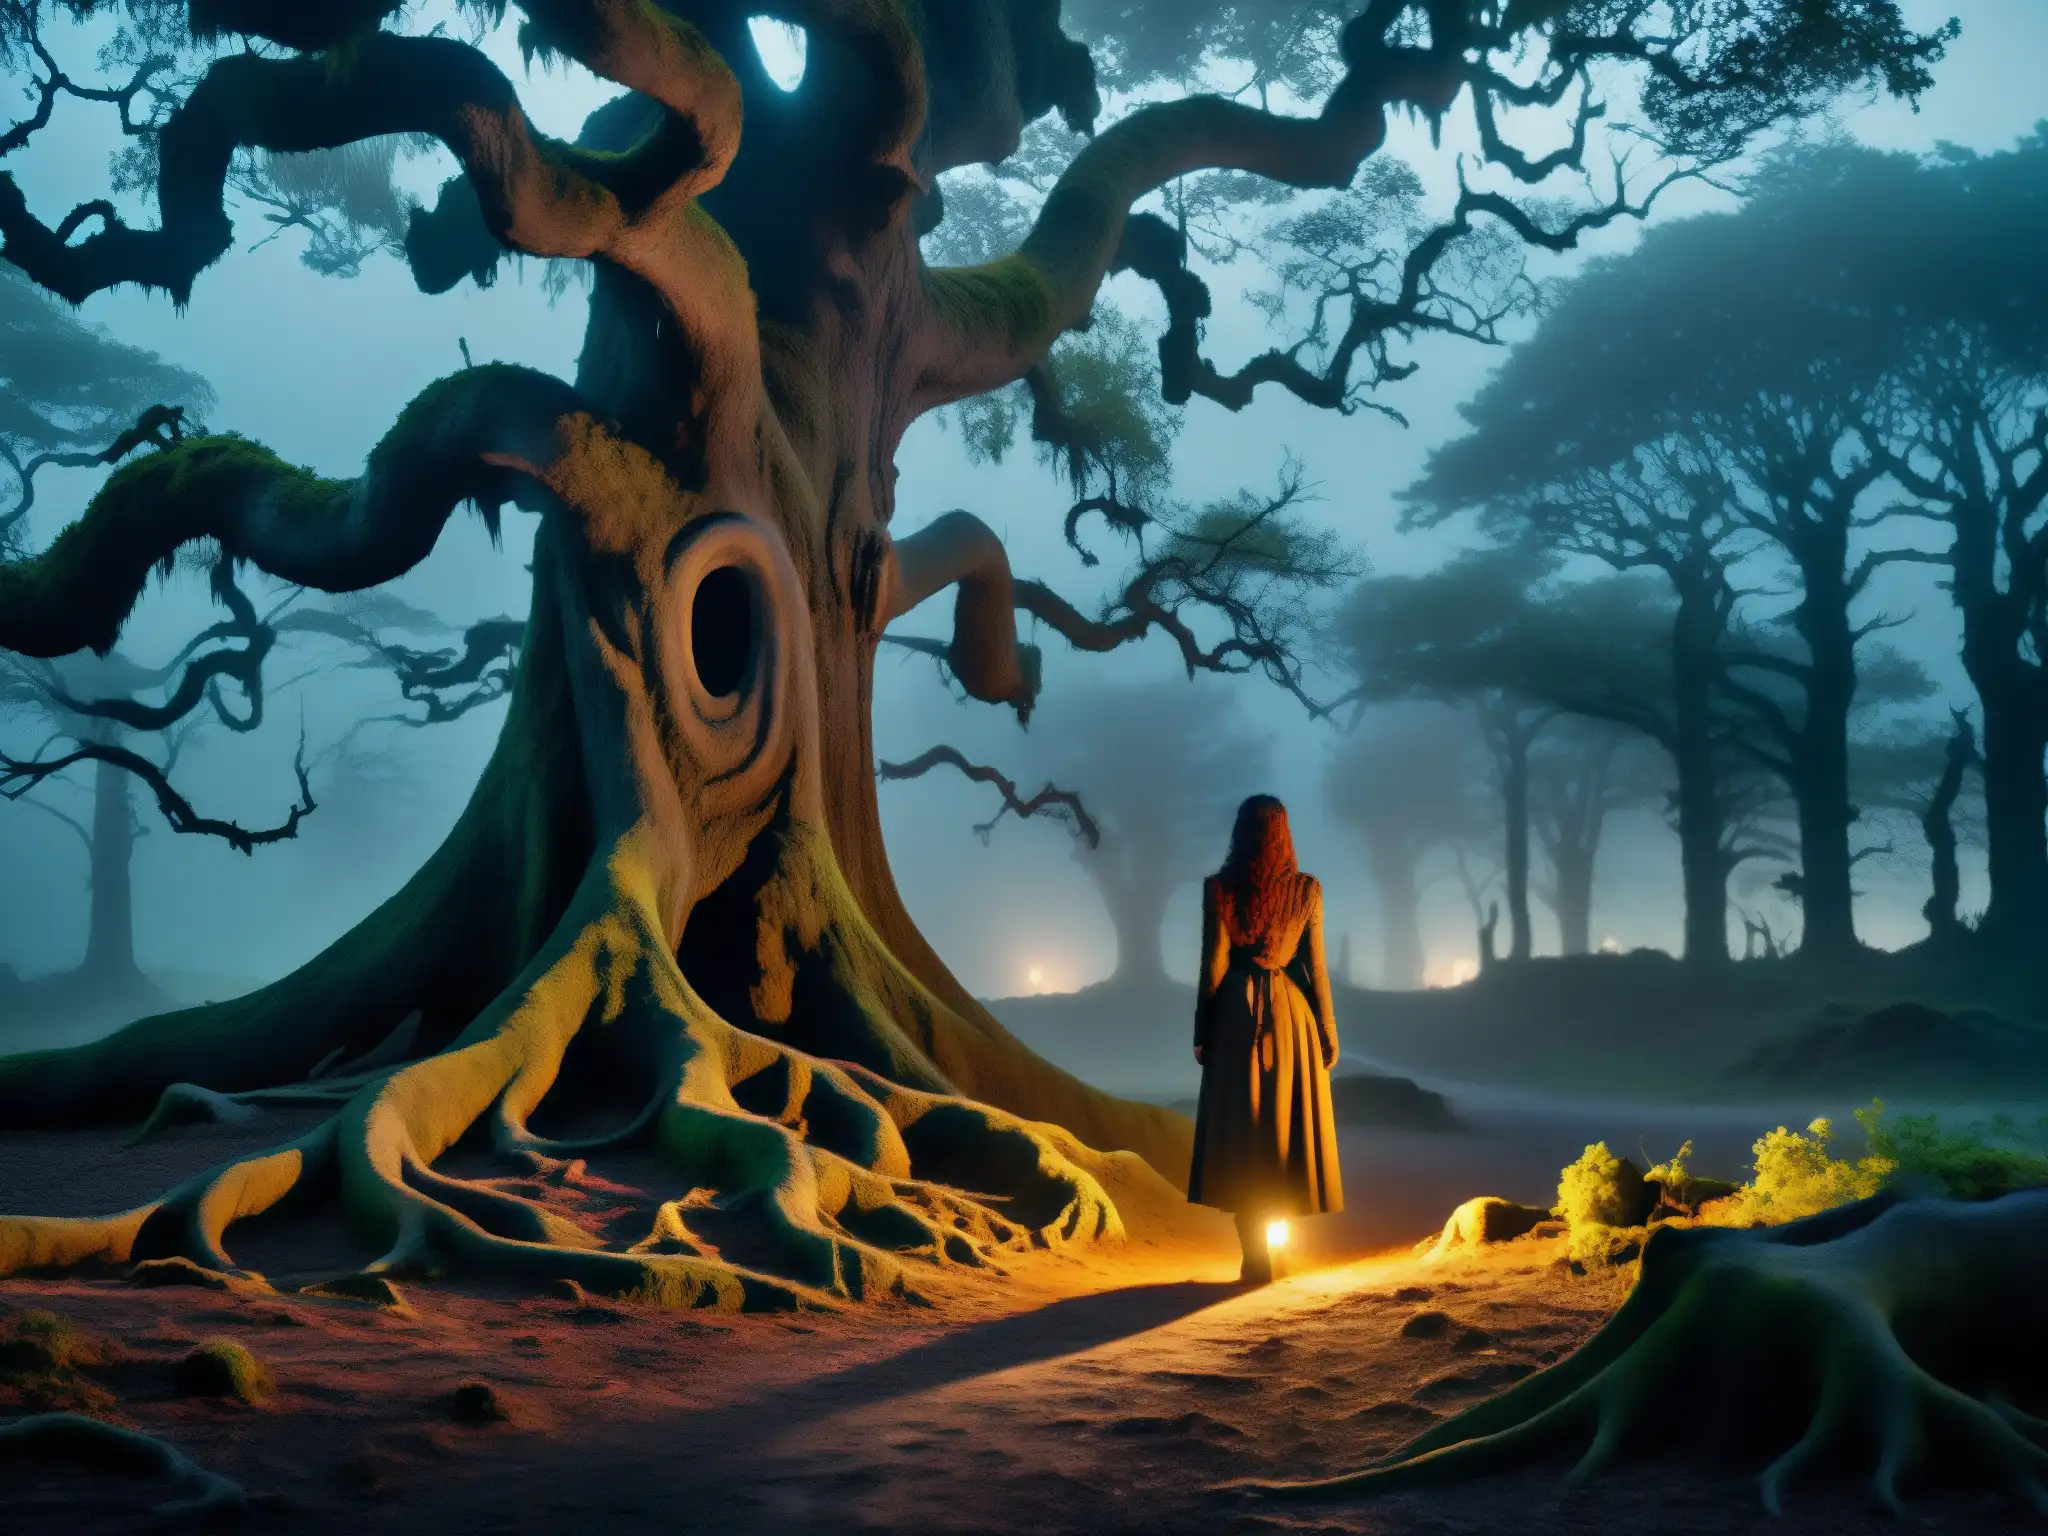 En el bosque brumoso al anochecer, la aterradora leyenda de NureOnna cobra vida con la figura de la mujer serpiente en la brecha de los árboles